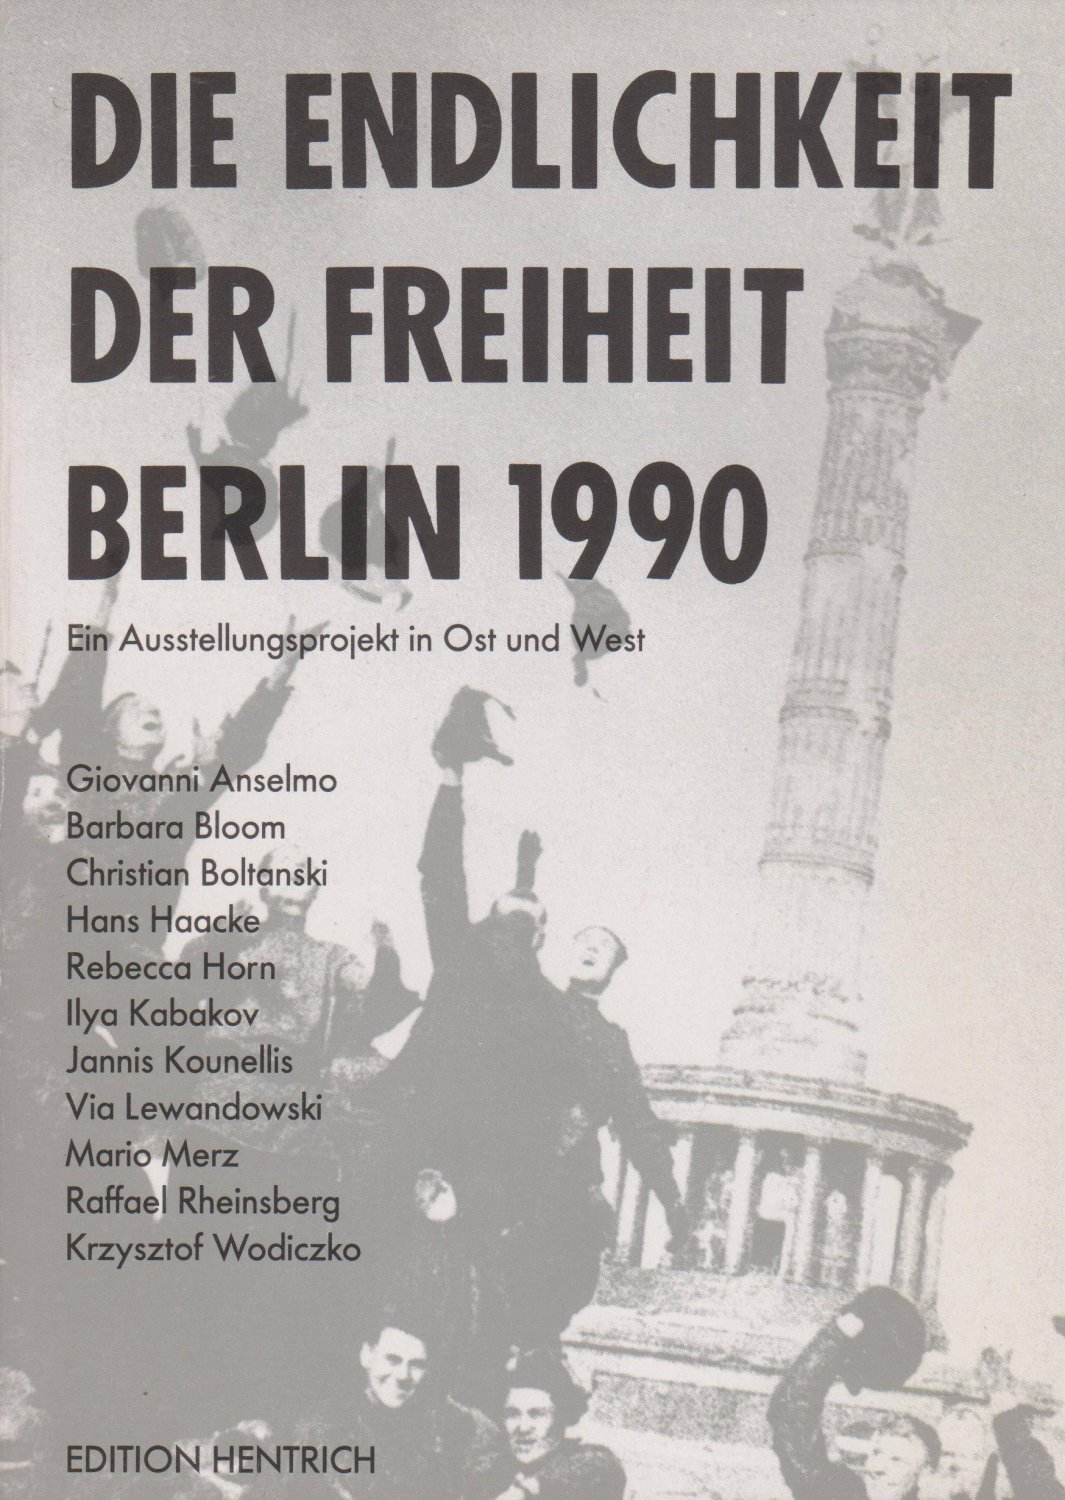 TANNERT, Christoph / SARTORIUS, Joachim (Herausgeber):  Die Endlichkeit der Freiheit - Berlin 1990. Ein Ausstellungsprojekt in Ost und West. 